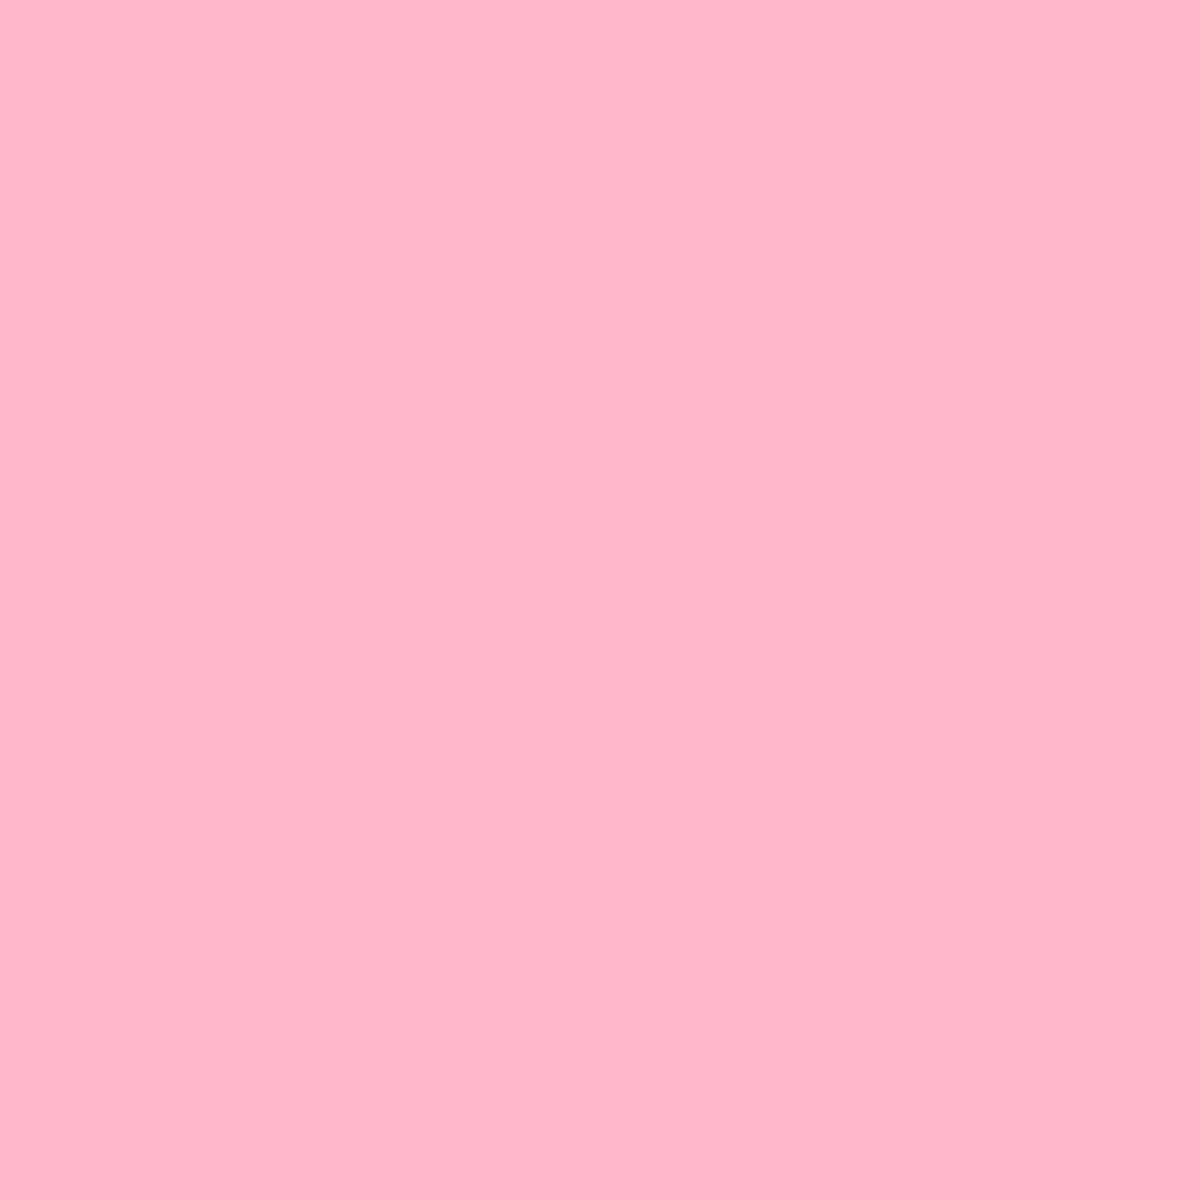 Pale pink drape